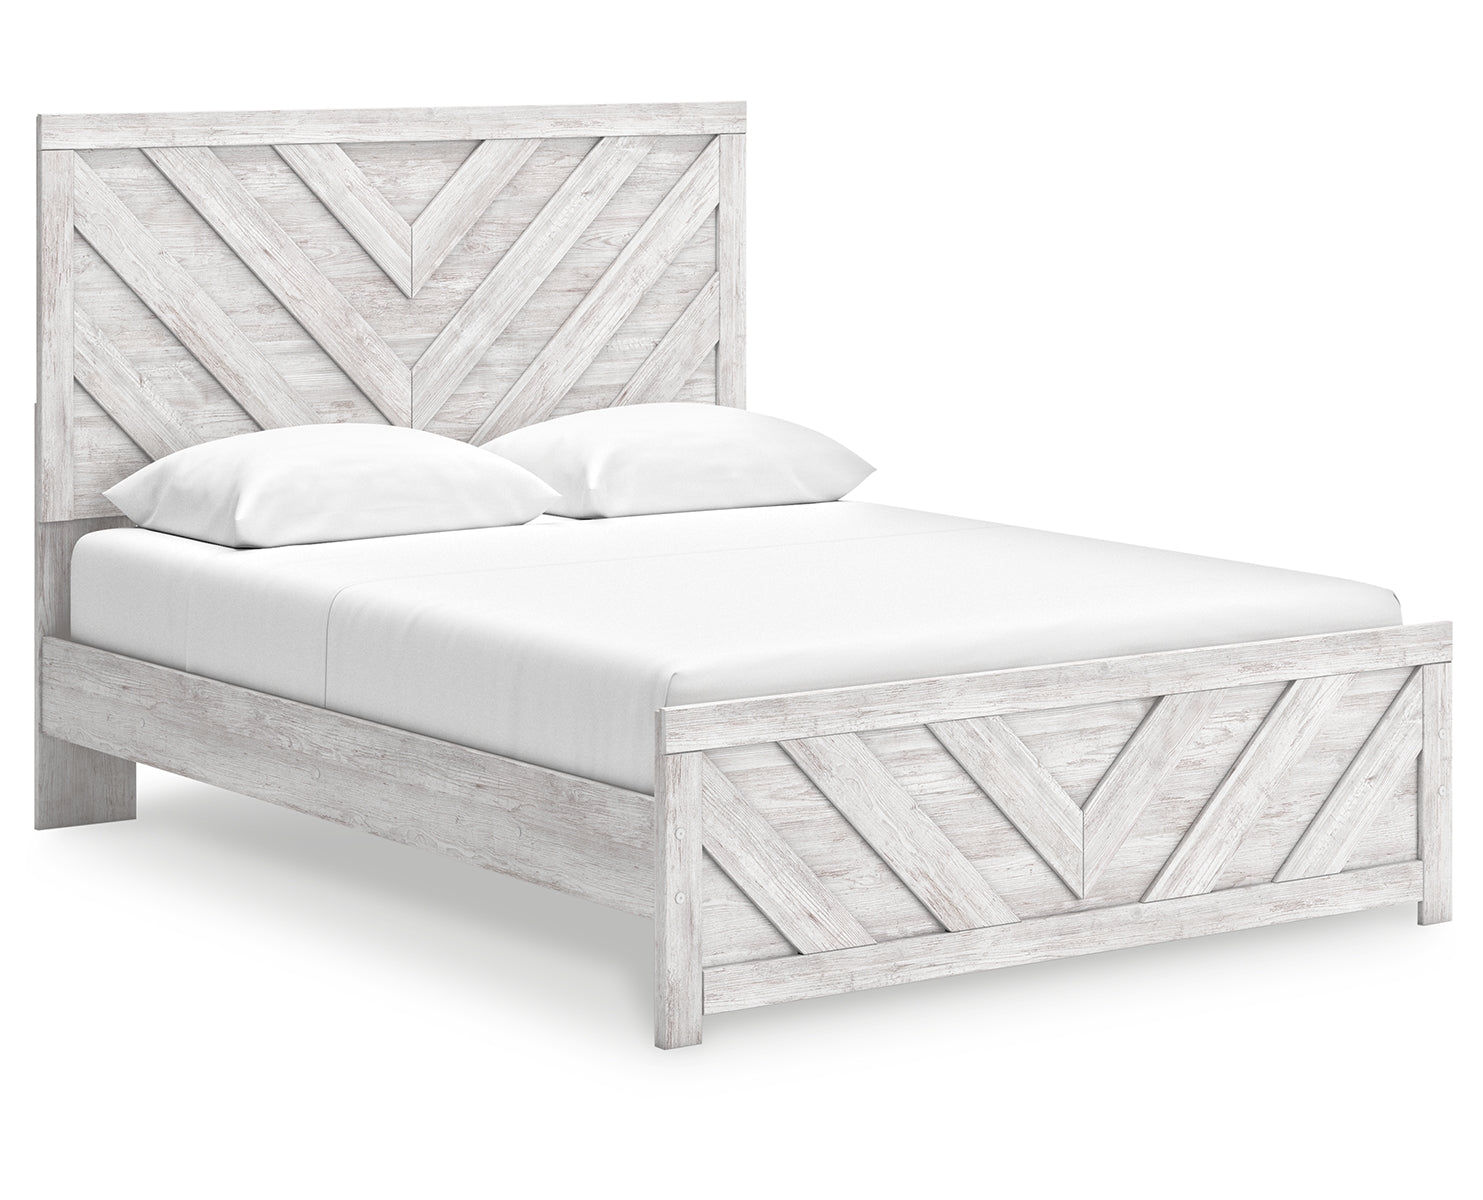 Cayboni Queen Panel Bed